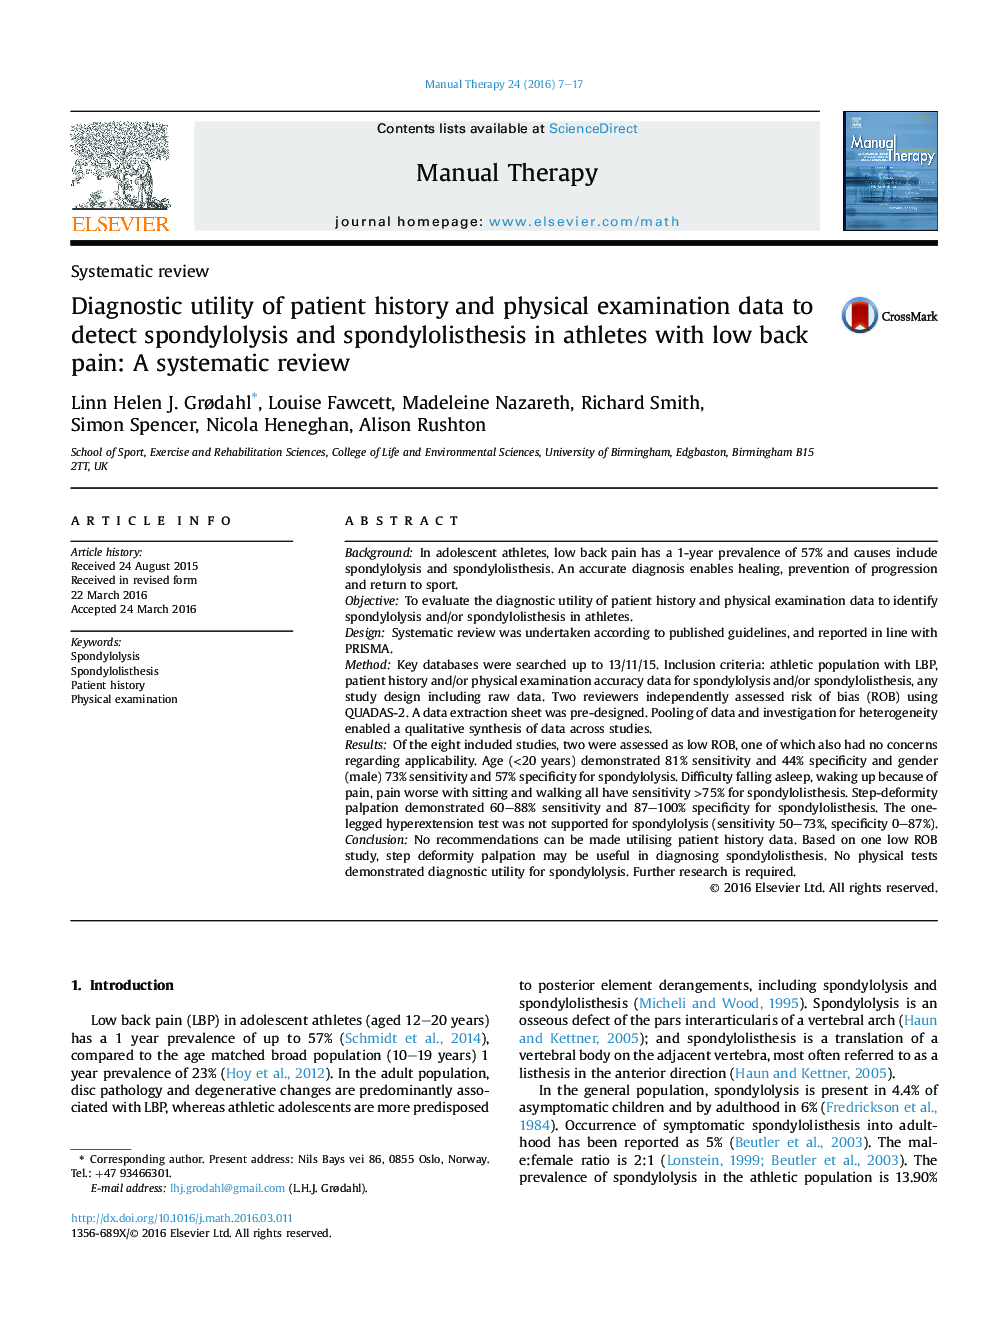 ابزار تشخیصی سابقه بیمار و داده های معاینه فیزیکی برای تشخیص اسپاندیلولیسیس و اسپوندیلولیستزی در ورزشکاران مبتلا به کمردرد: بررسی سیستماتیک